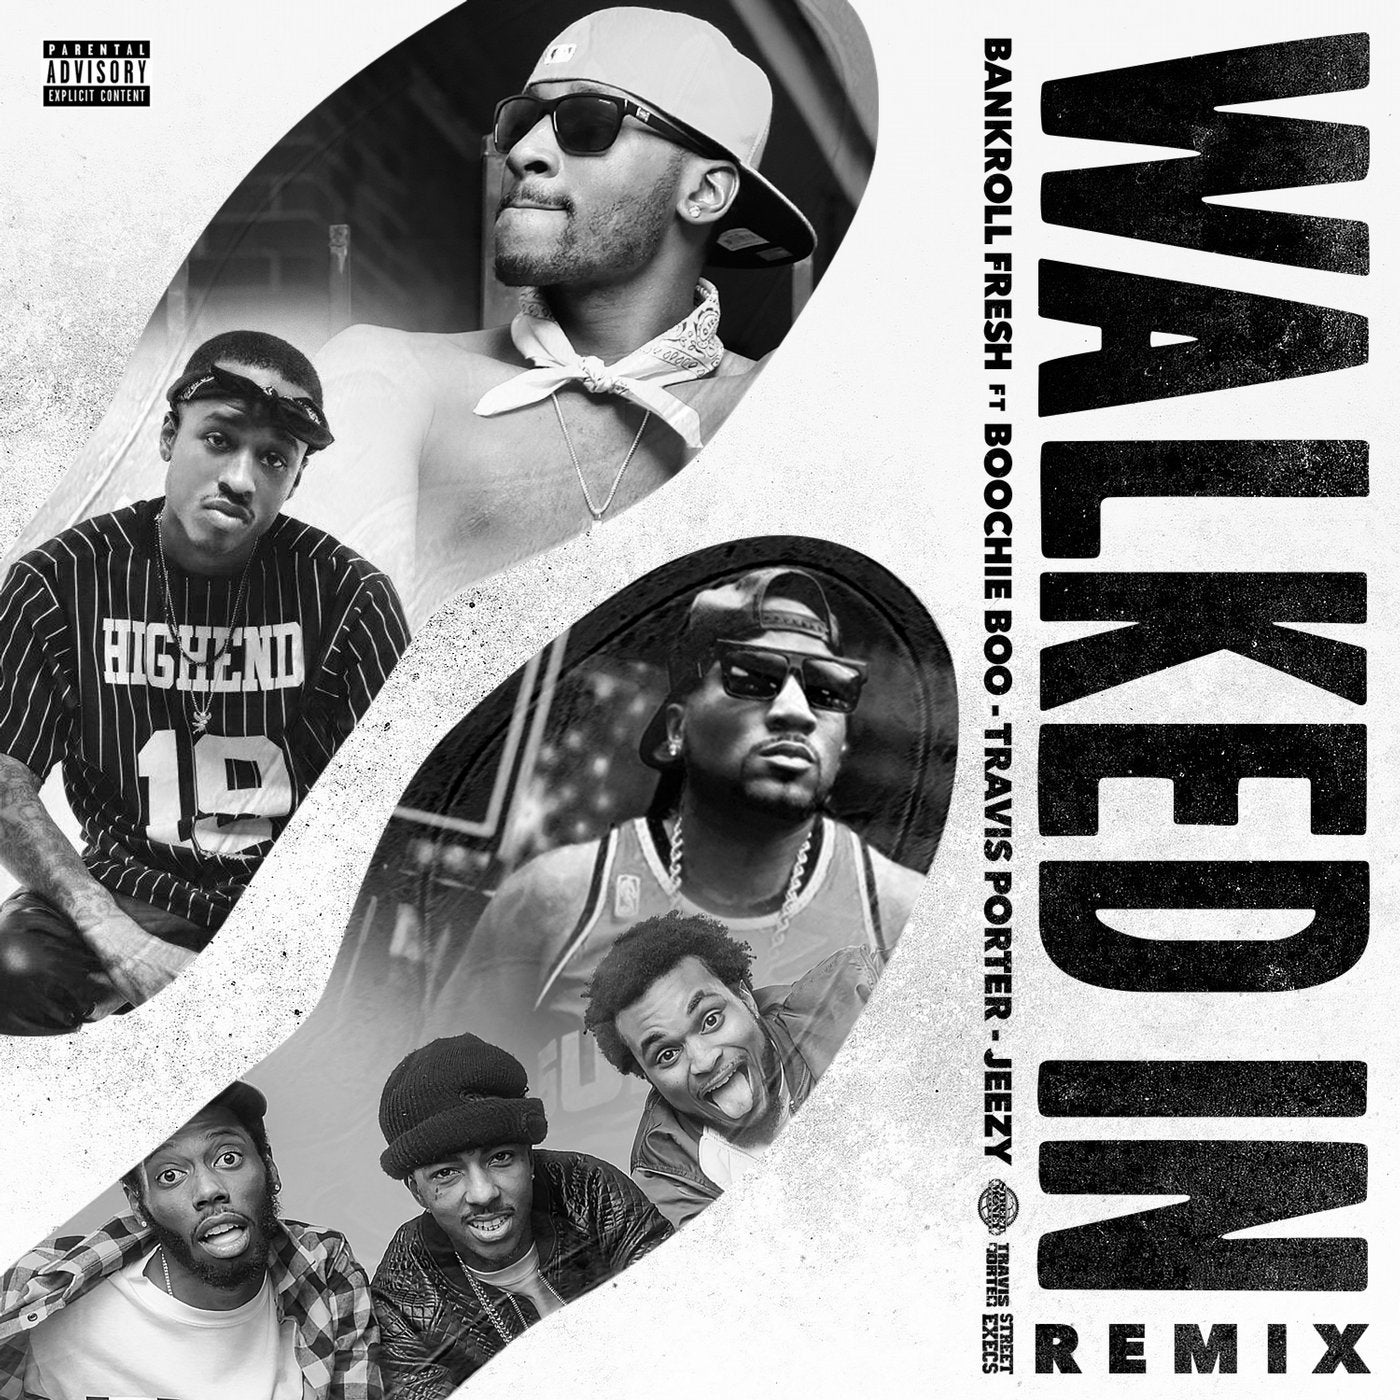 Walked In (Remix) [feat. Boochie Boo, Travis Porter & Jeezy] - Single